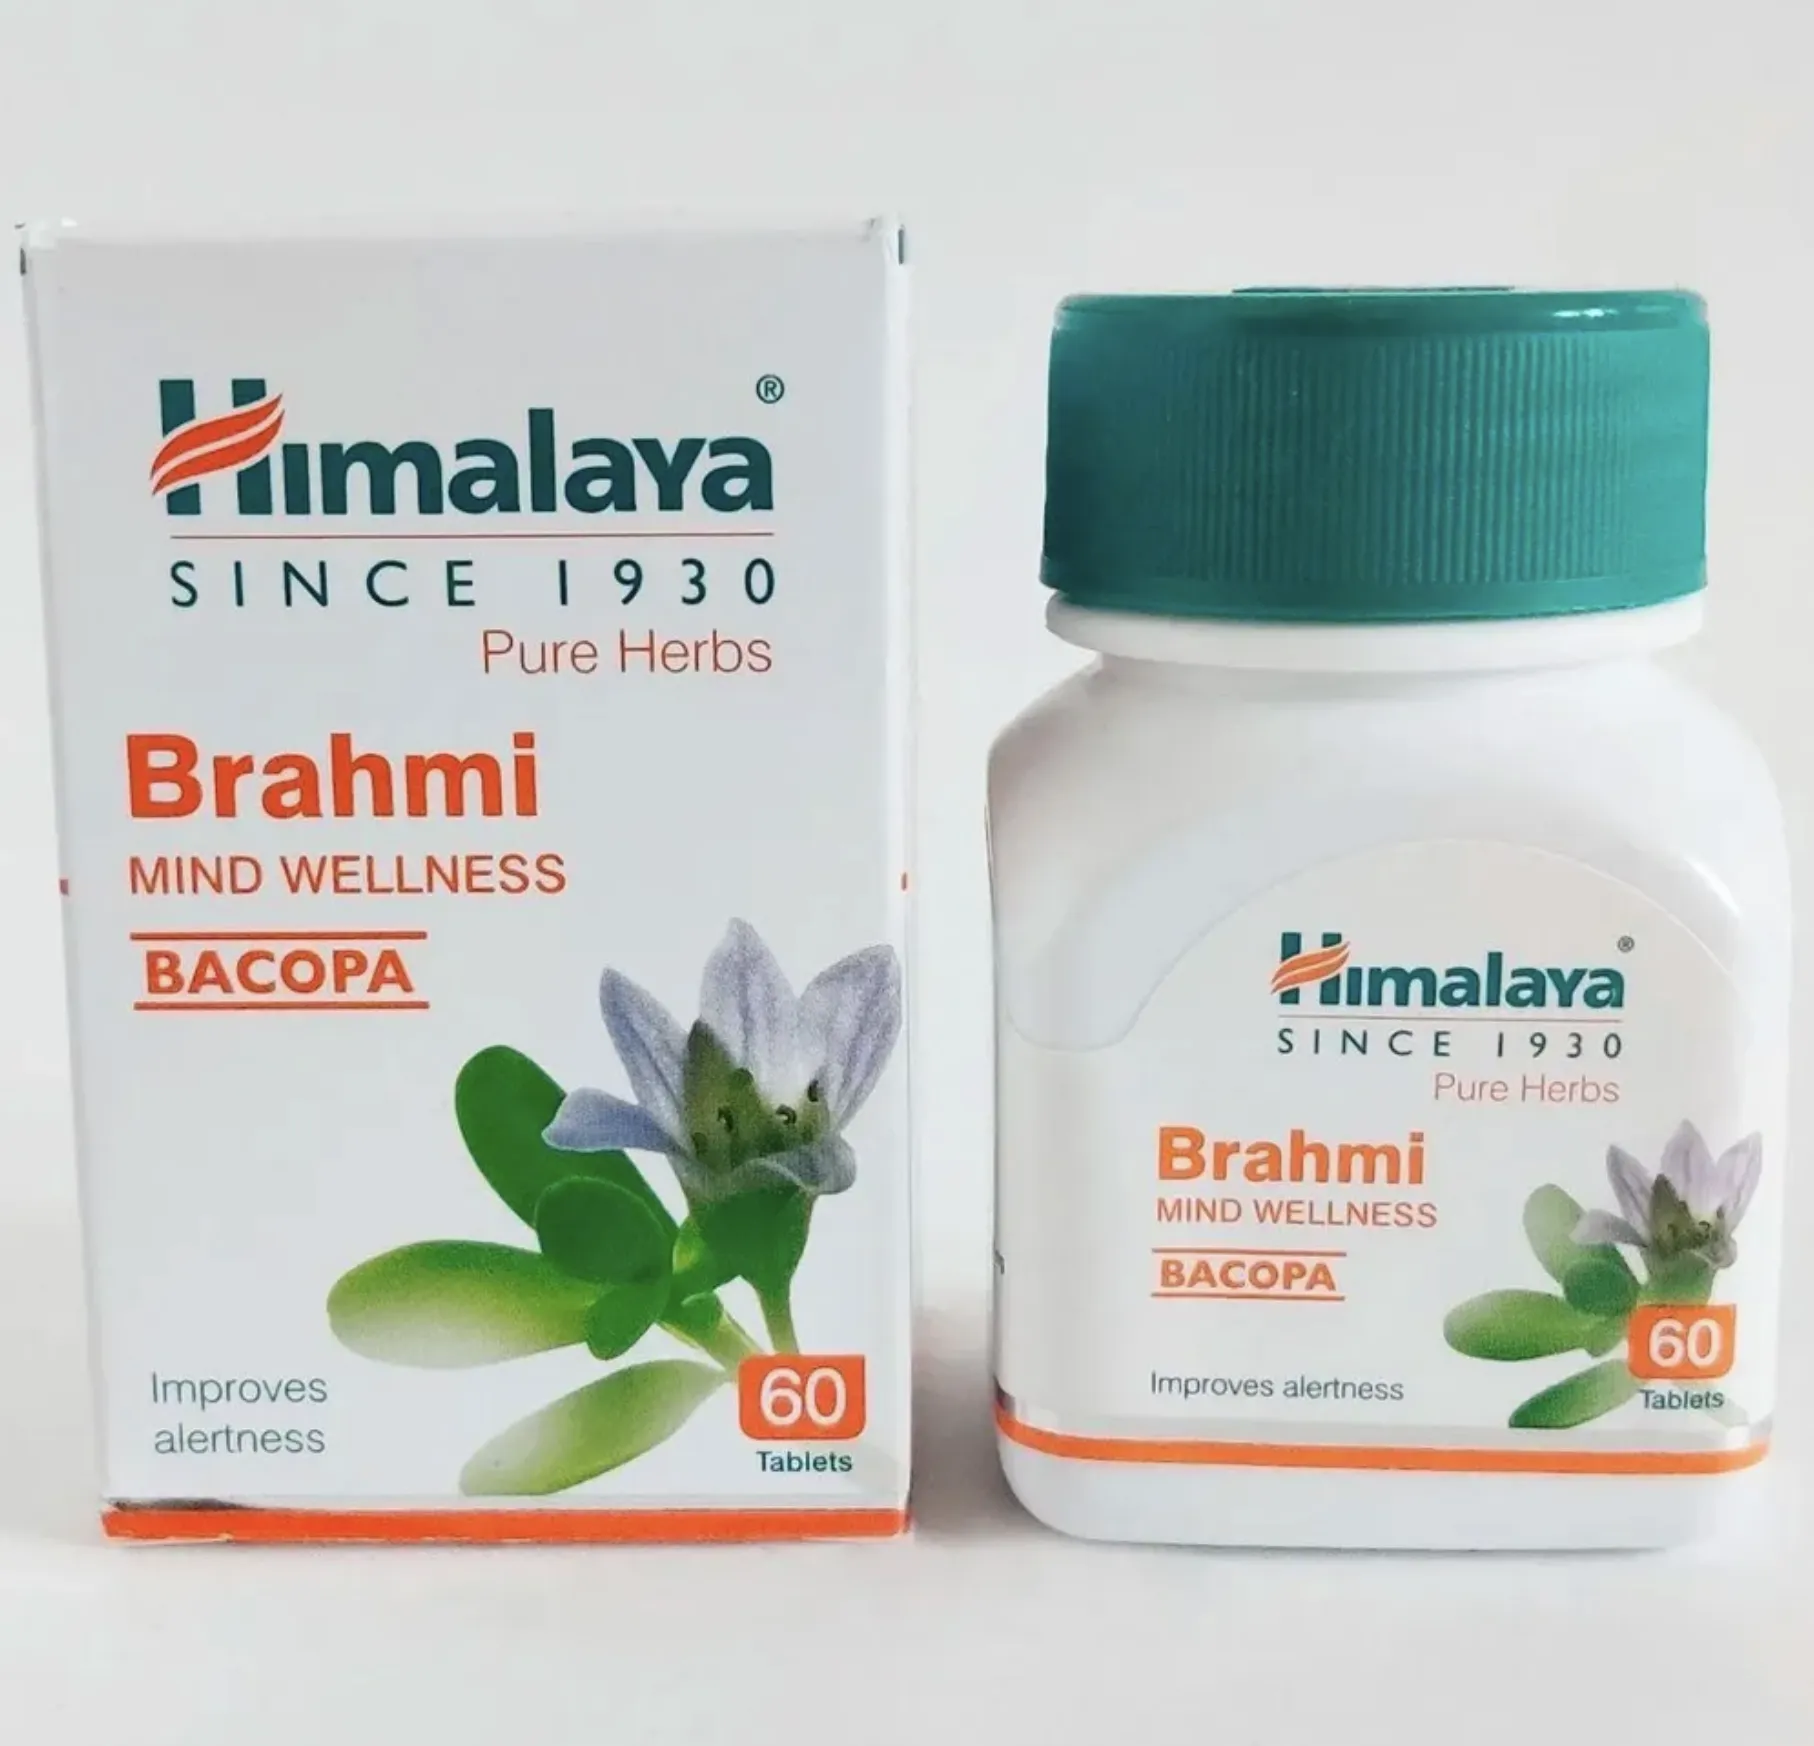 Средство Брахми Хималая (Brahmi Himalaya) пищевая добавка для улучшения работы мозга#3